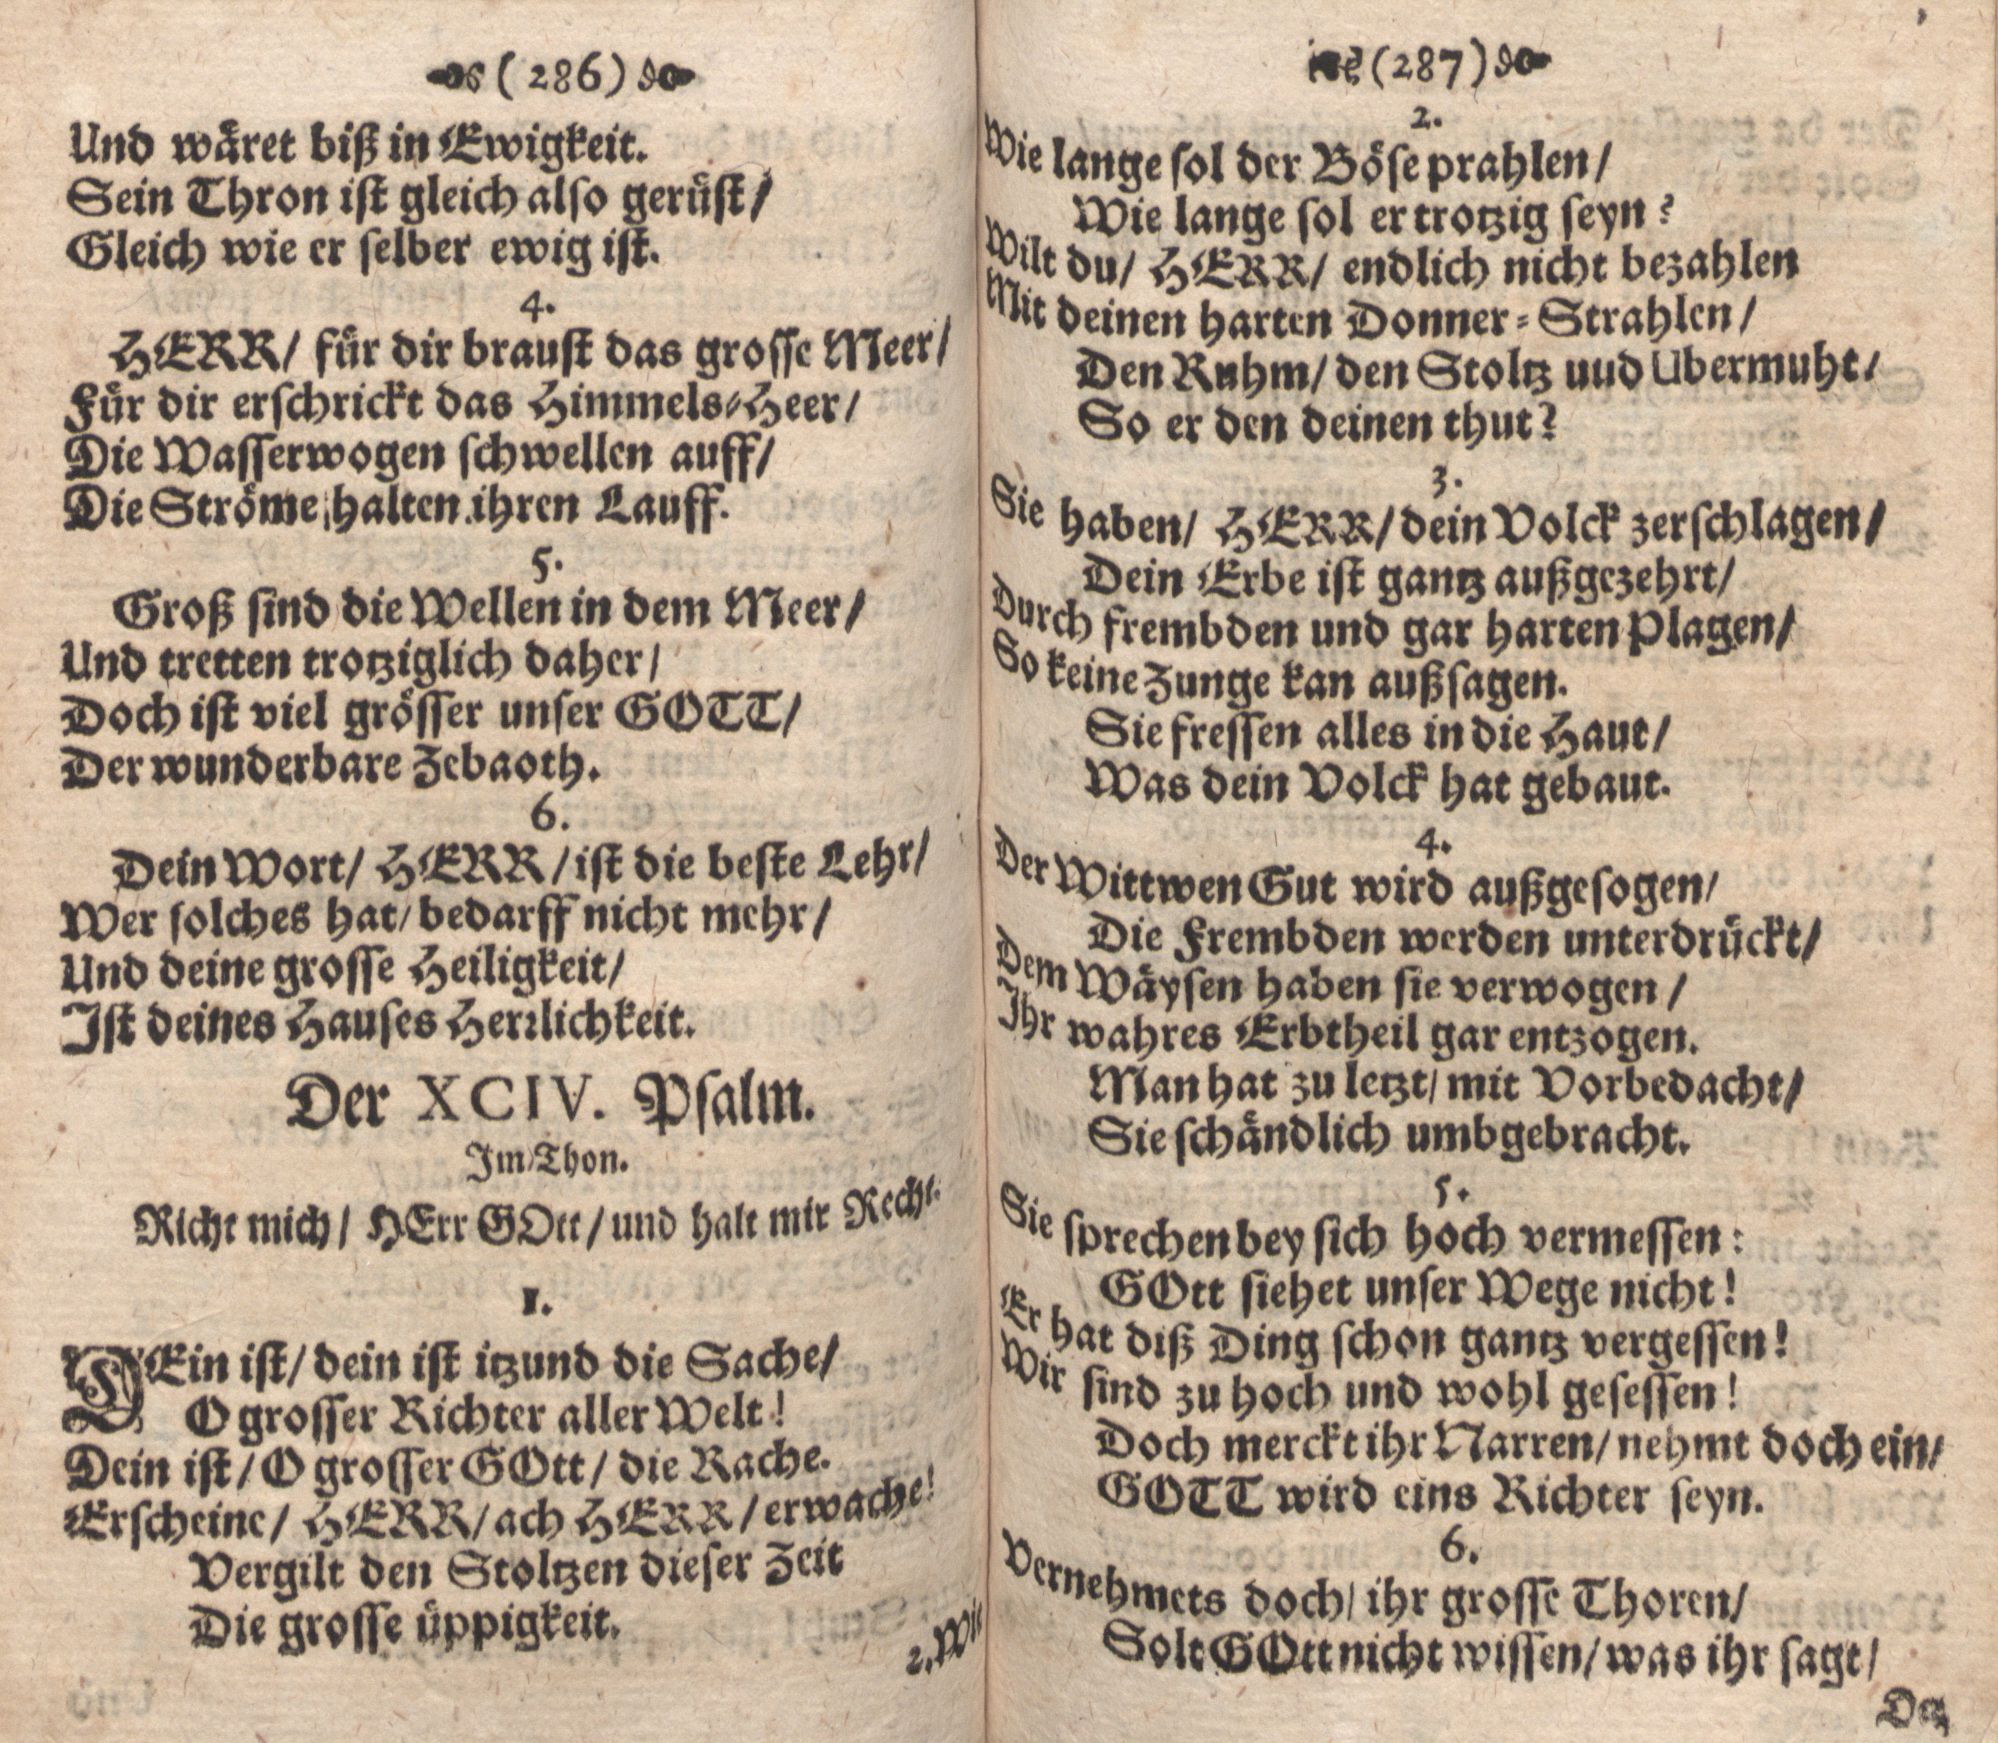 Der Verfolgete, Errettete und Lobsingende David (1686) | 144. (286-287) Основной текст